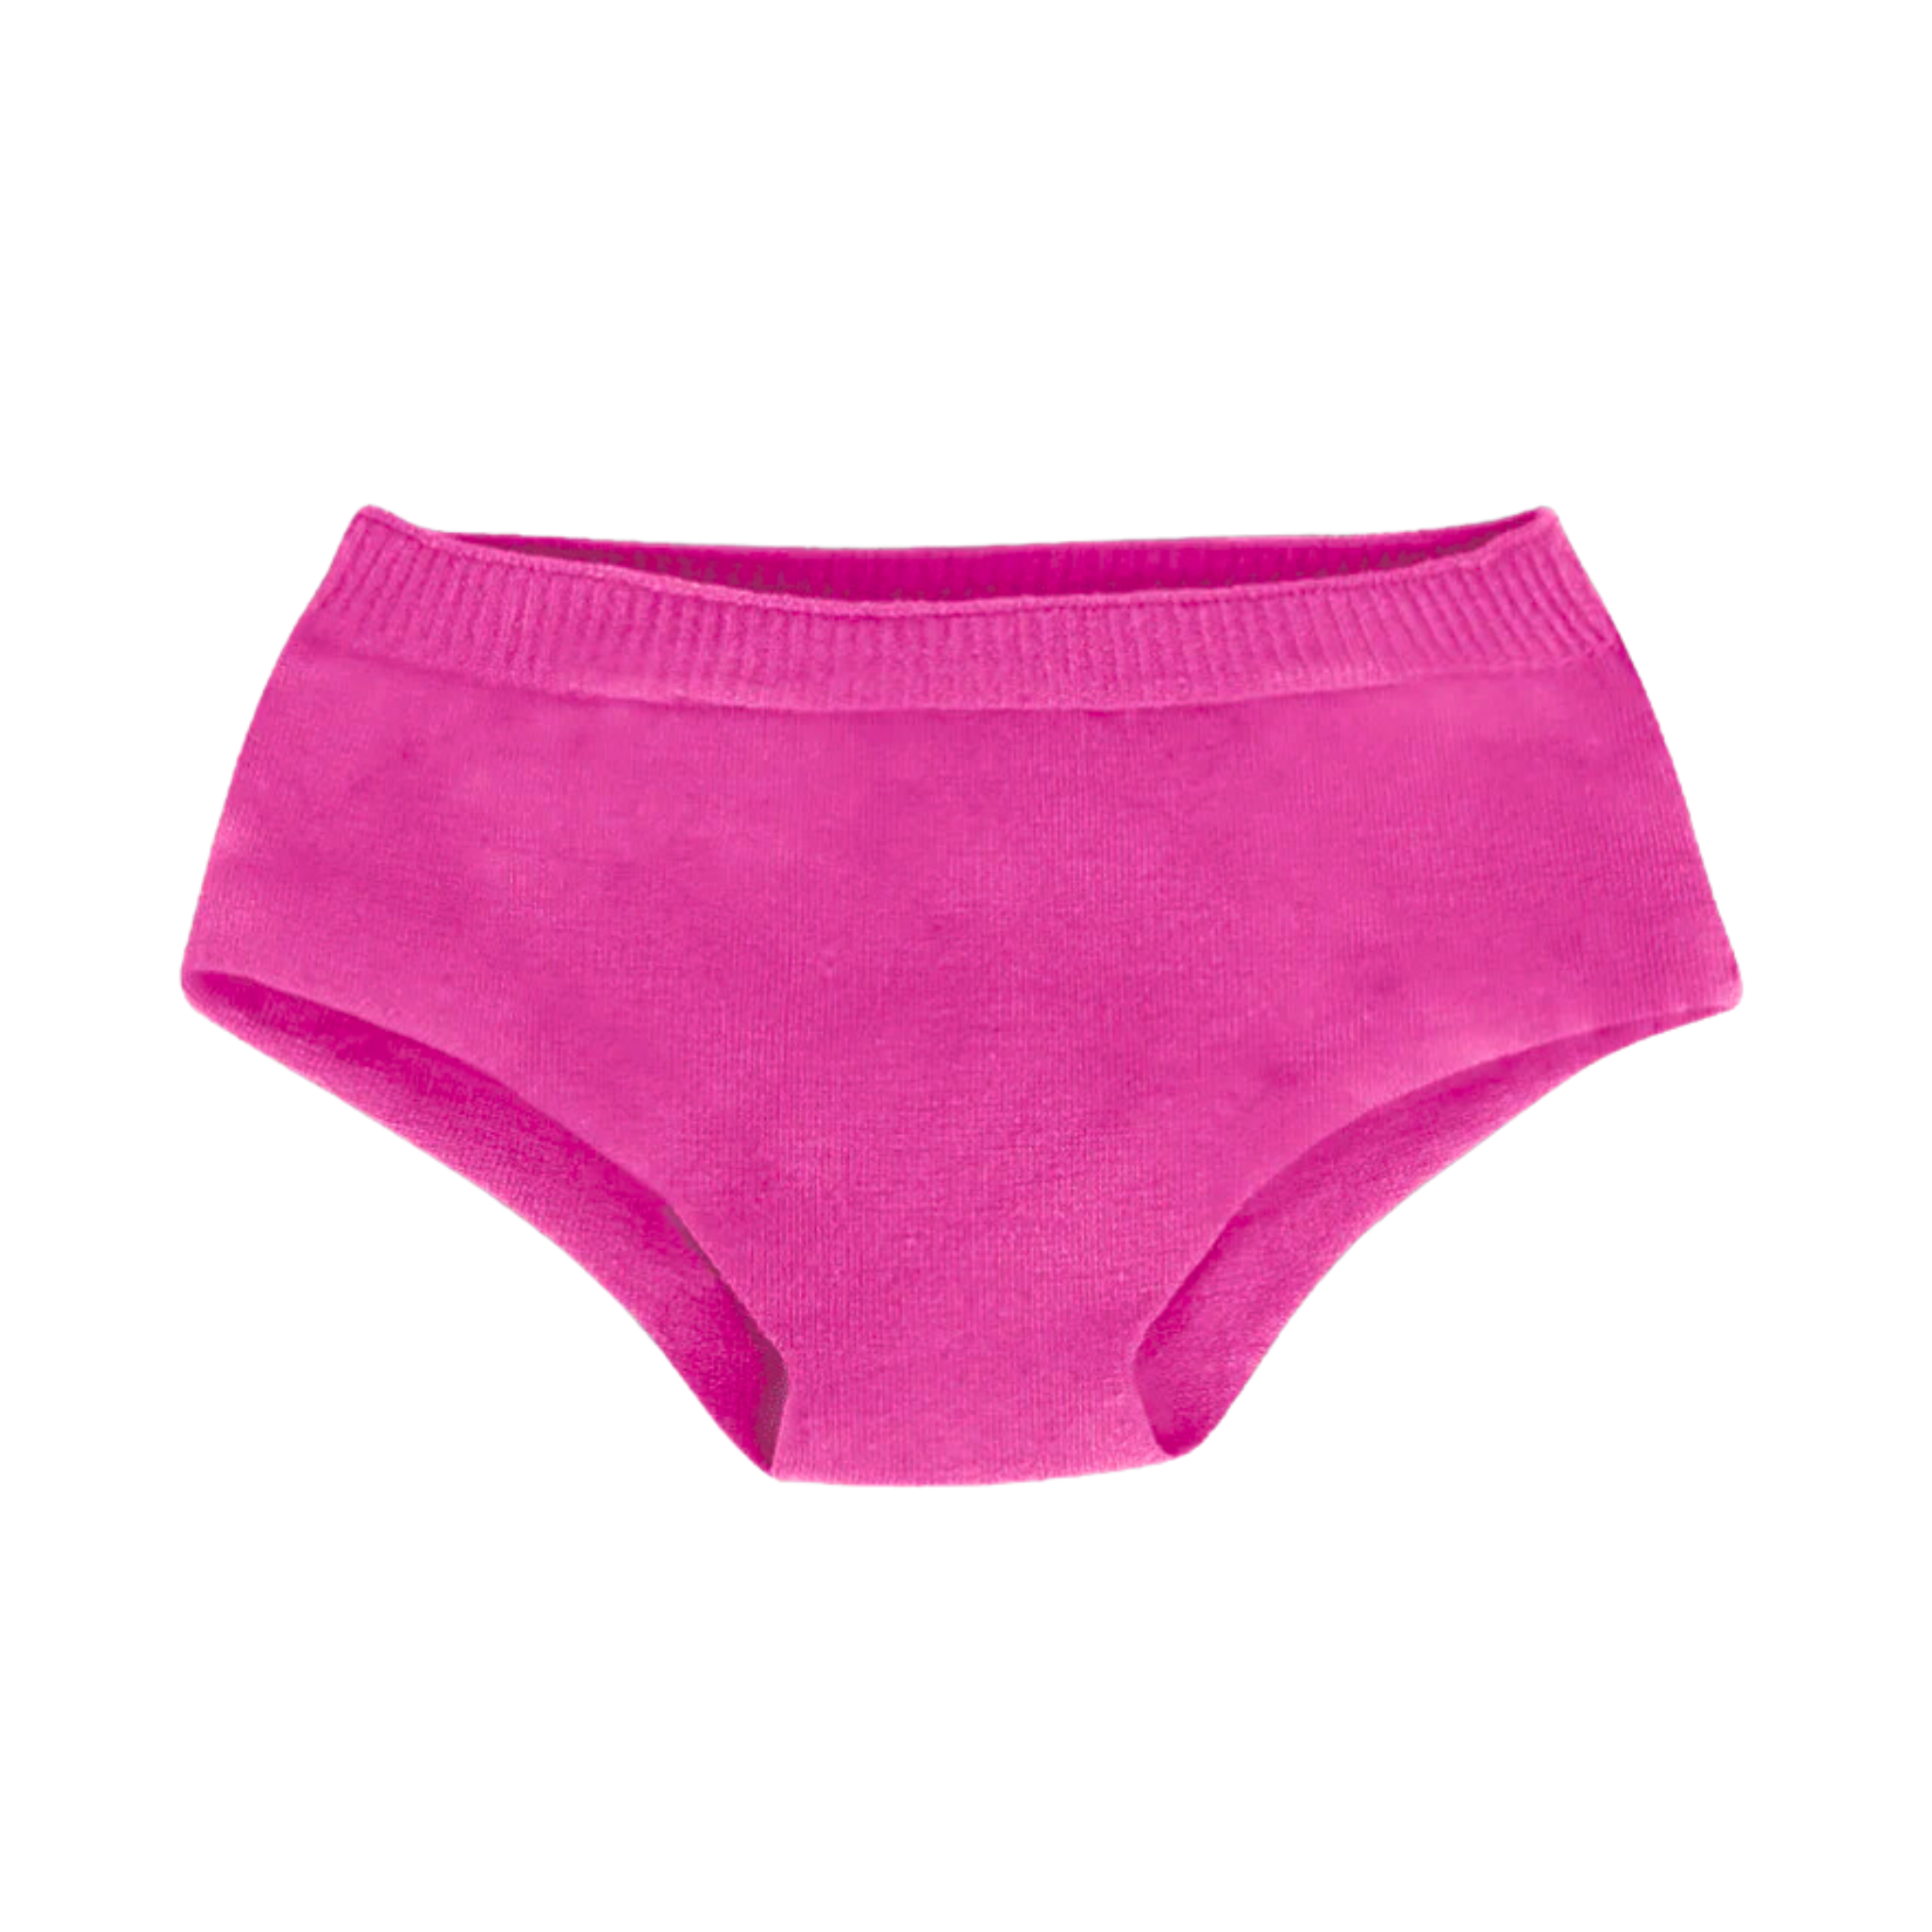 Seamless La Piel Brief Underwear for Women